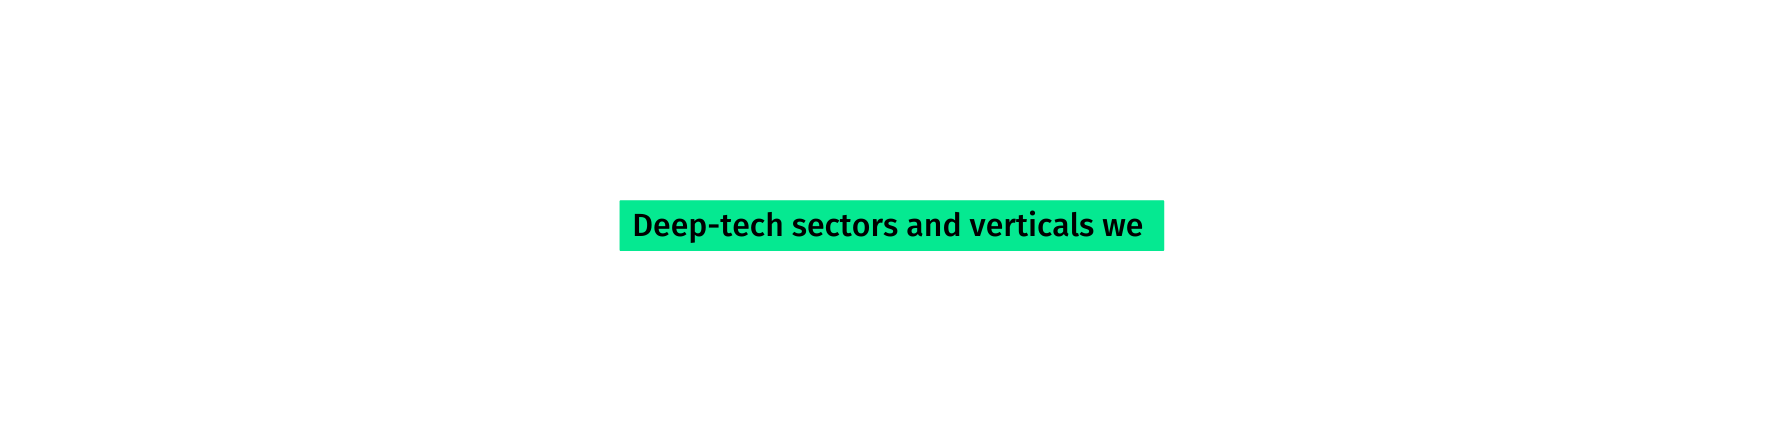 Deep tech sectors and verticals we